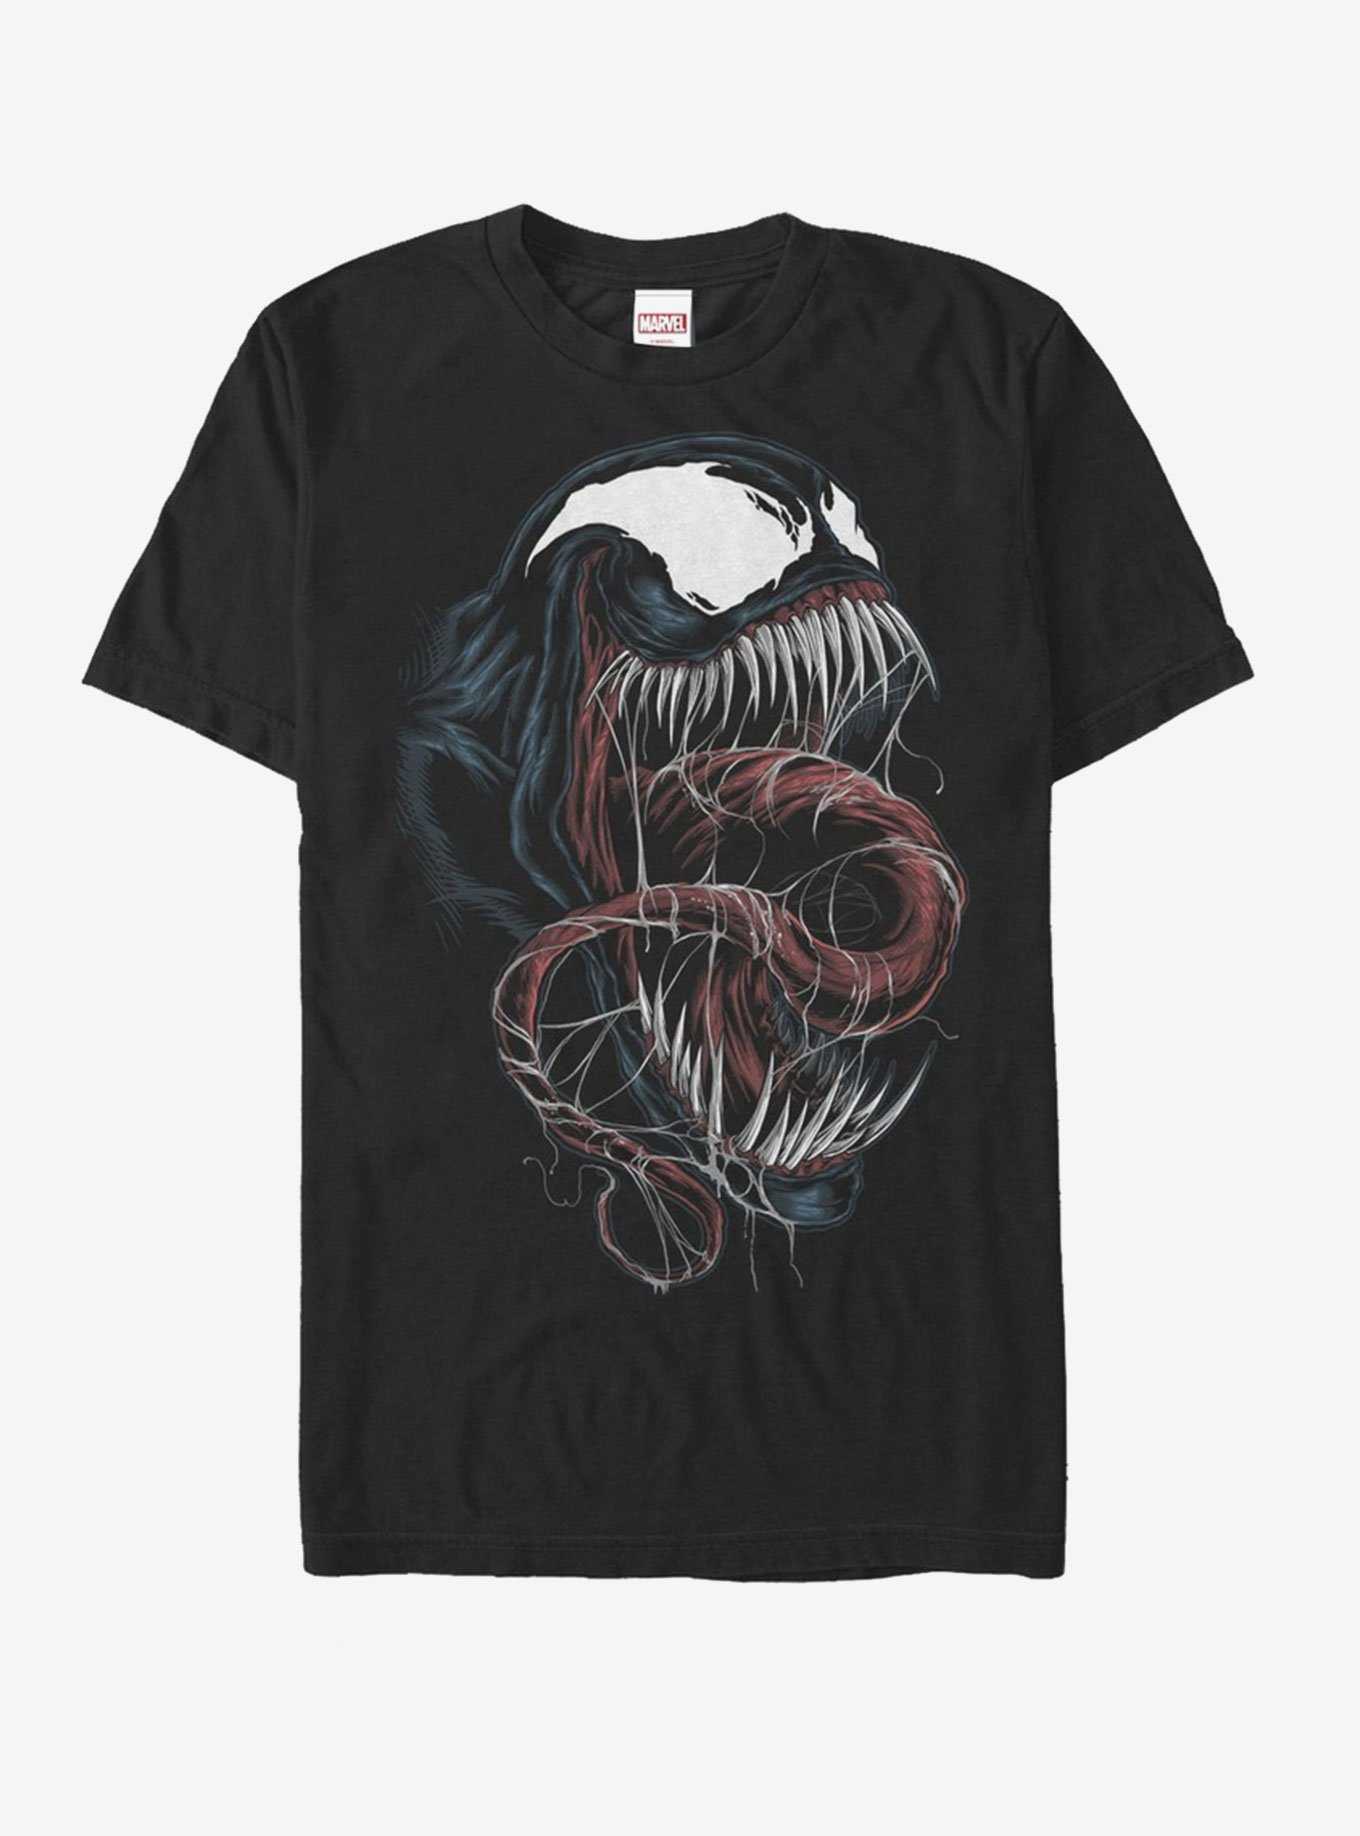 Marvel Venom Close-Up T-Shirt, , hi-res